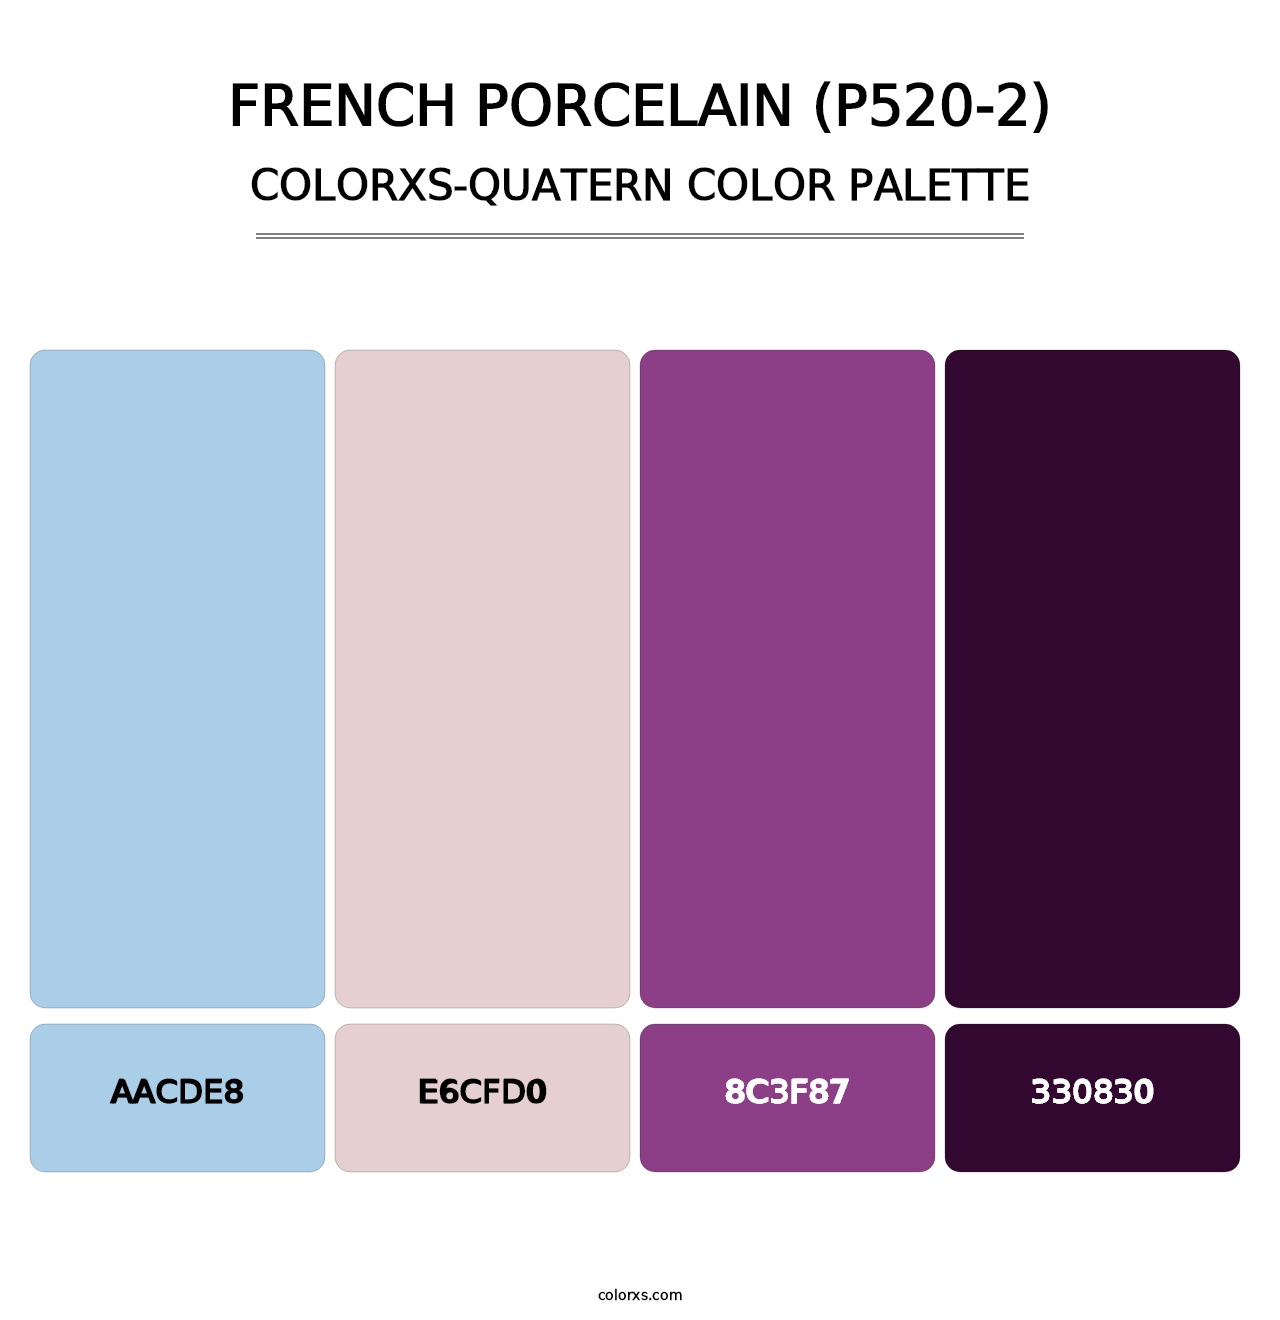 French Porcelain (P520-2) - Colorxs Quatern Palette